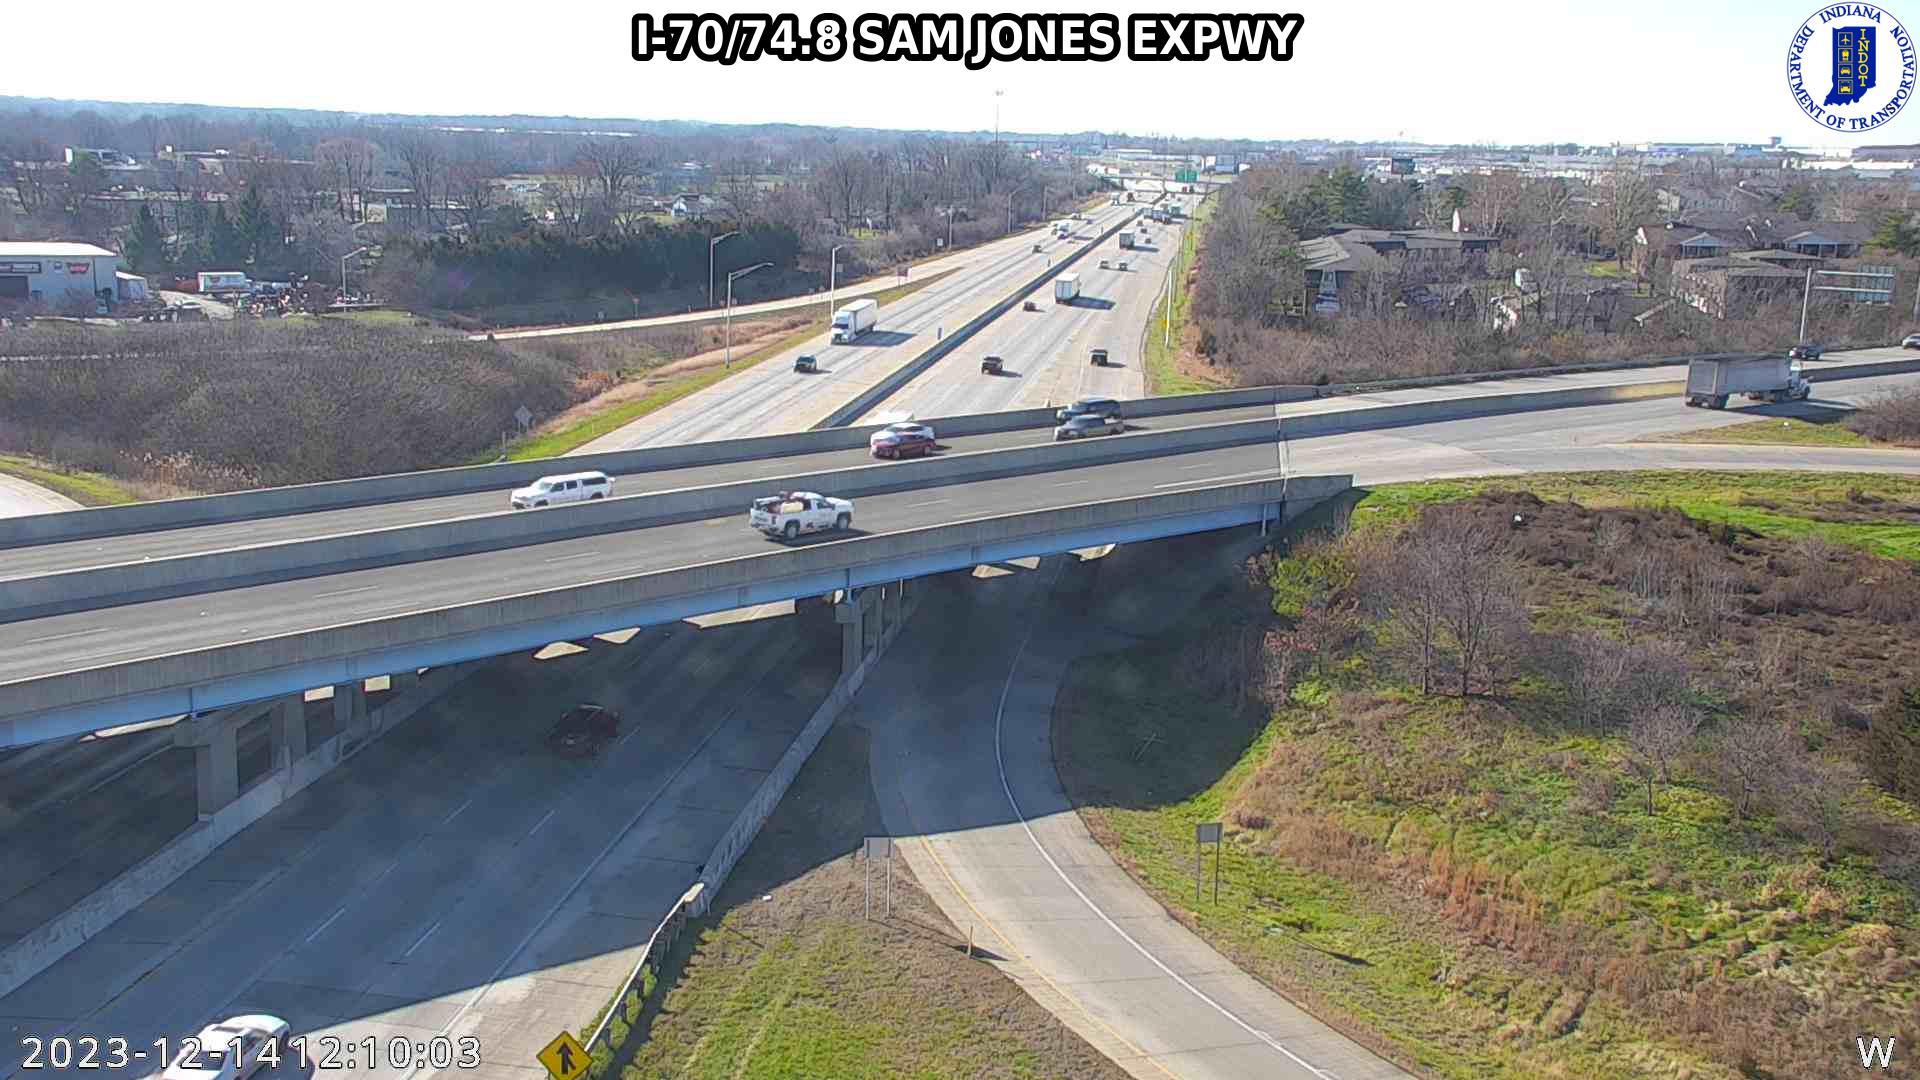 Traffic Cam Indianapolis: I-70: I-70/74.8 SAM JONES EXPWY: I-70/74.8 SAM JONES EXPWY